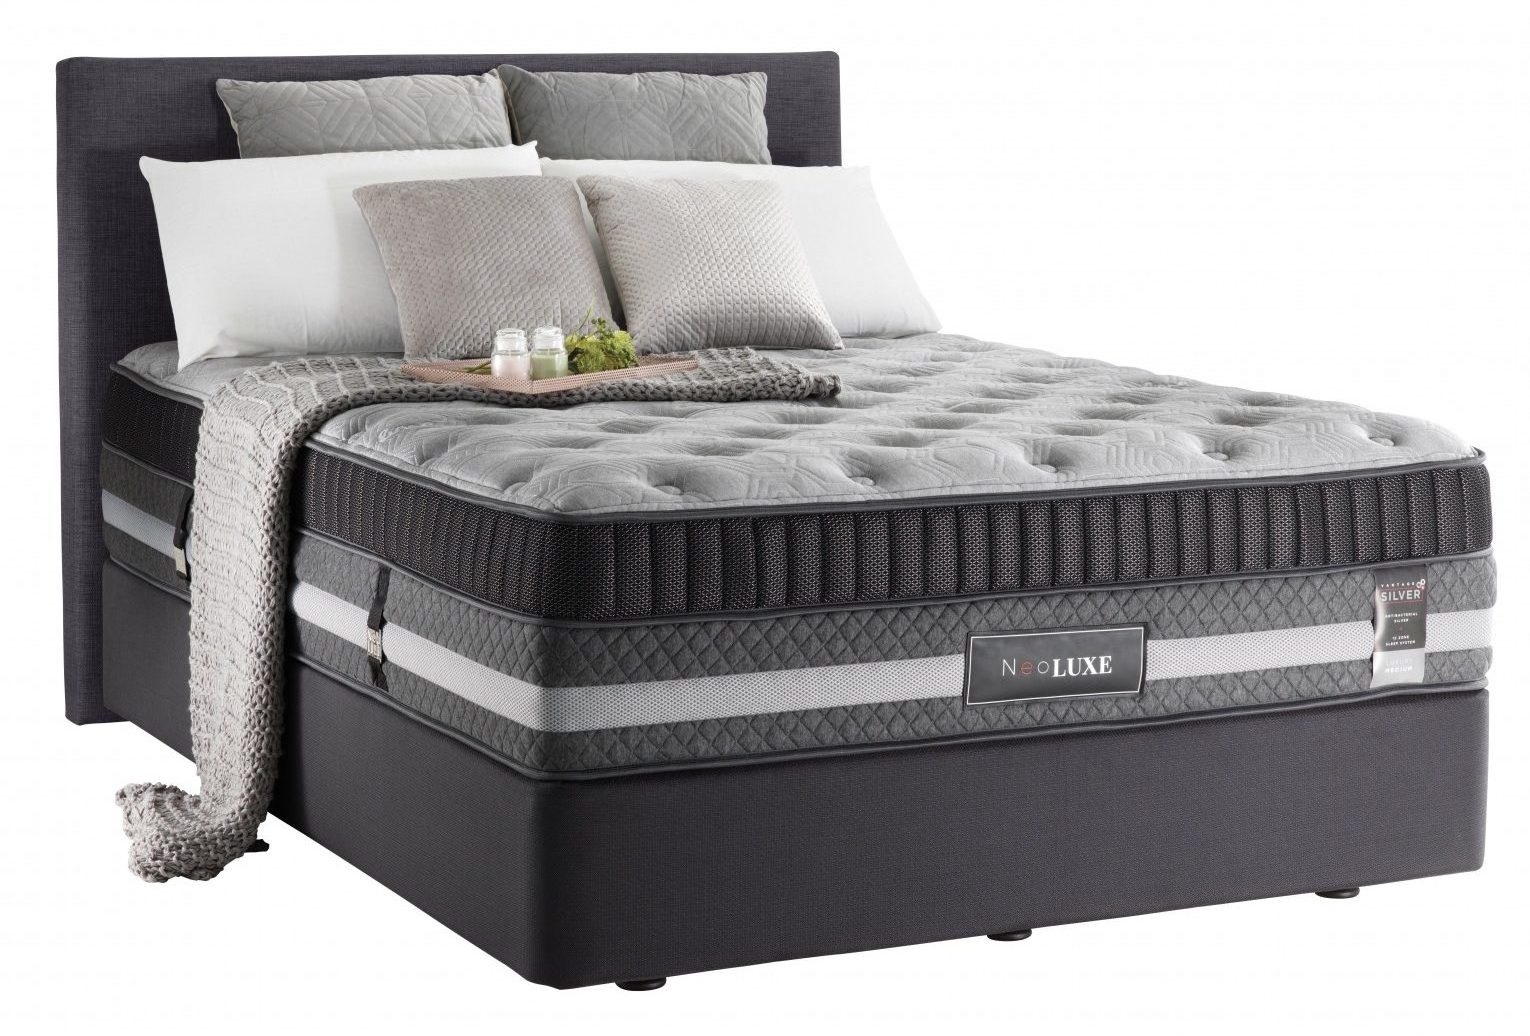 neoluxe vantage silver plush mattress review